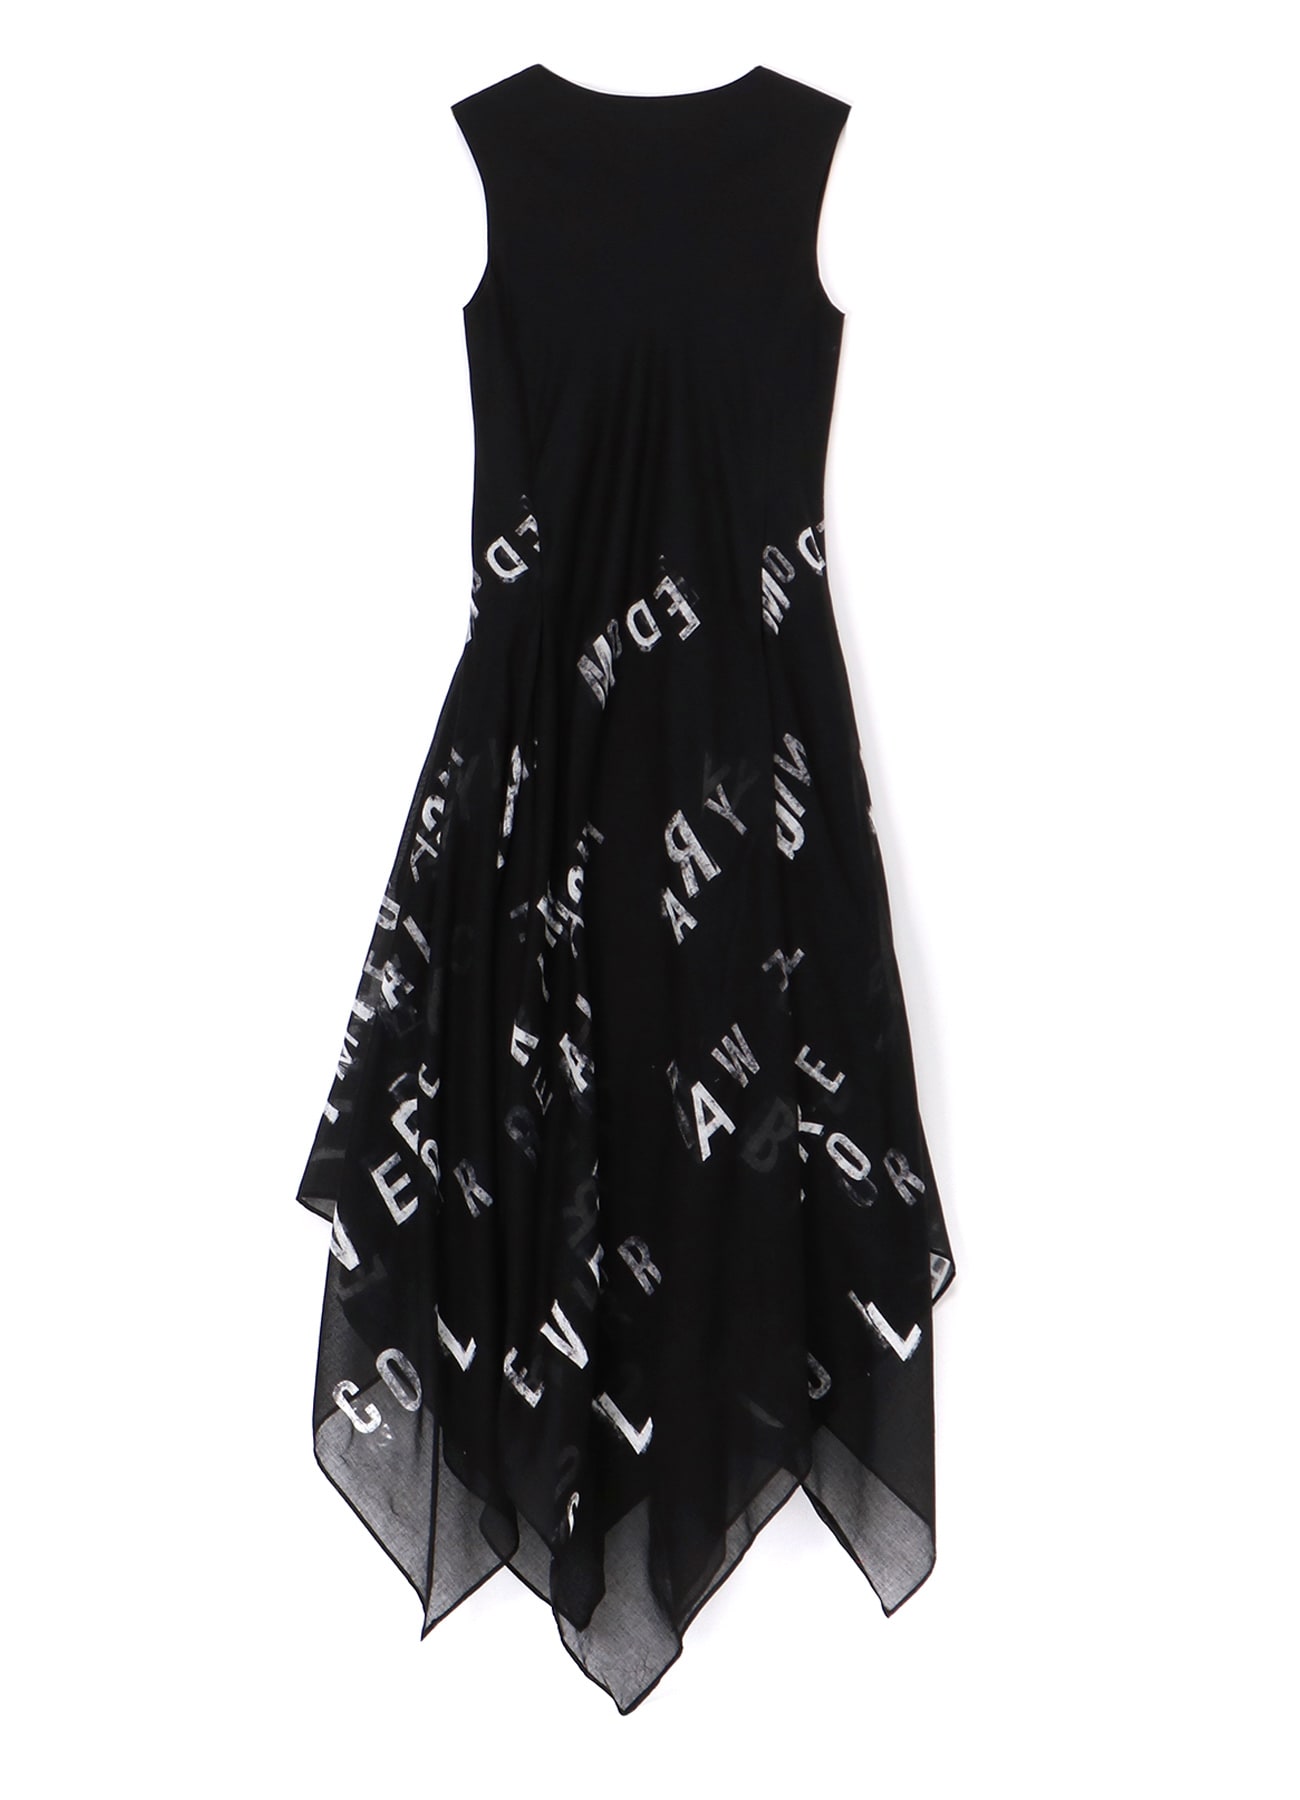 DILEMMA PT SQUARE PANNELS DRESS(S black): Vintage 1.1｜THE SHOP 